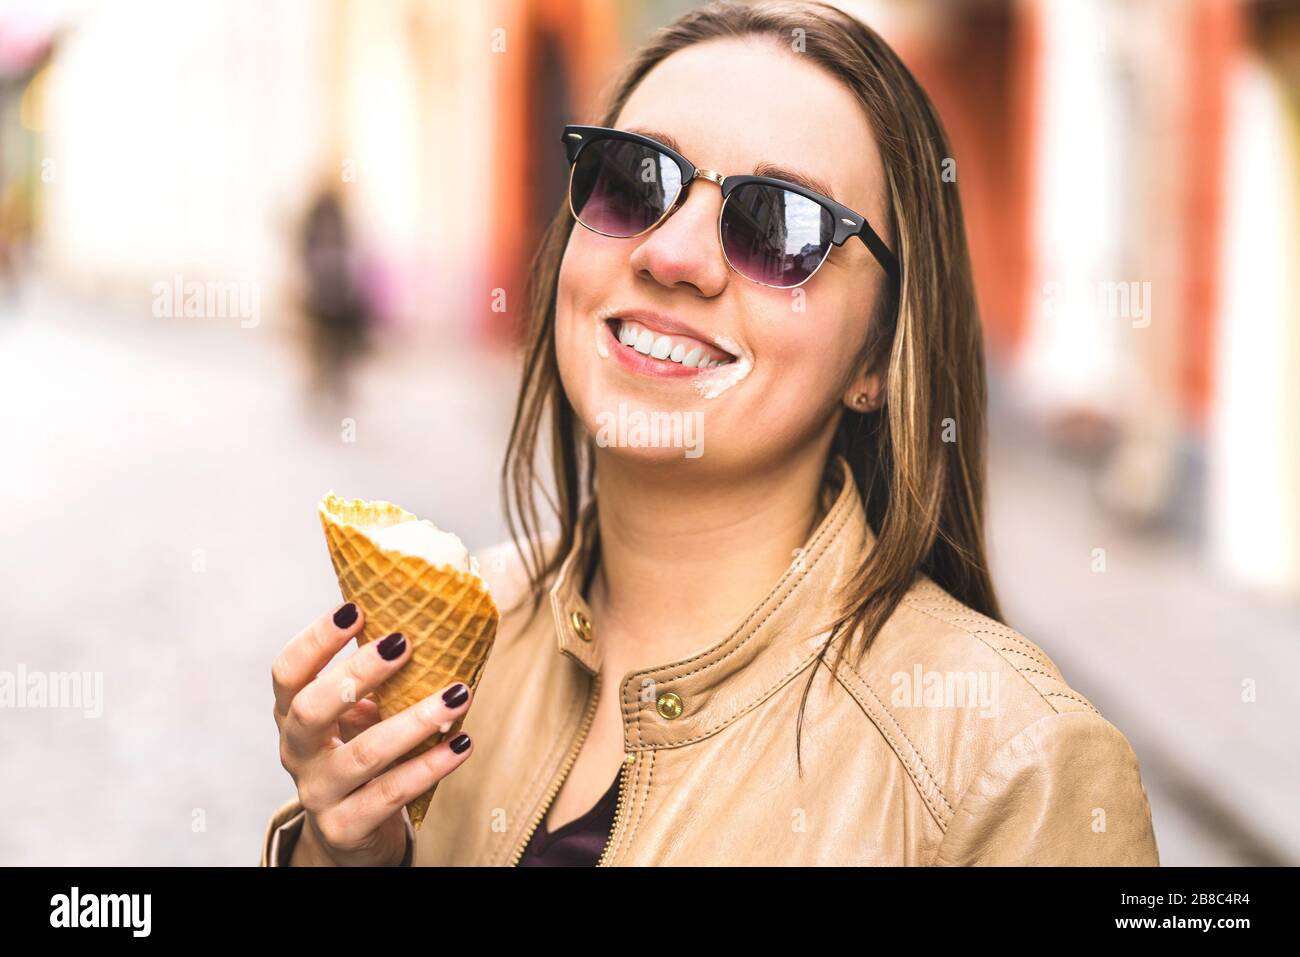 Eiscreme auf unordügem Gesicht. Fröhliche lachende Frau, die in der Stadt Schmelzen und Eis tropft. Stockfoto